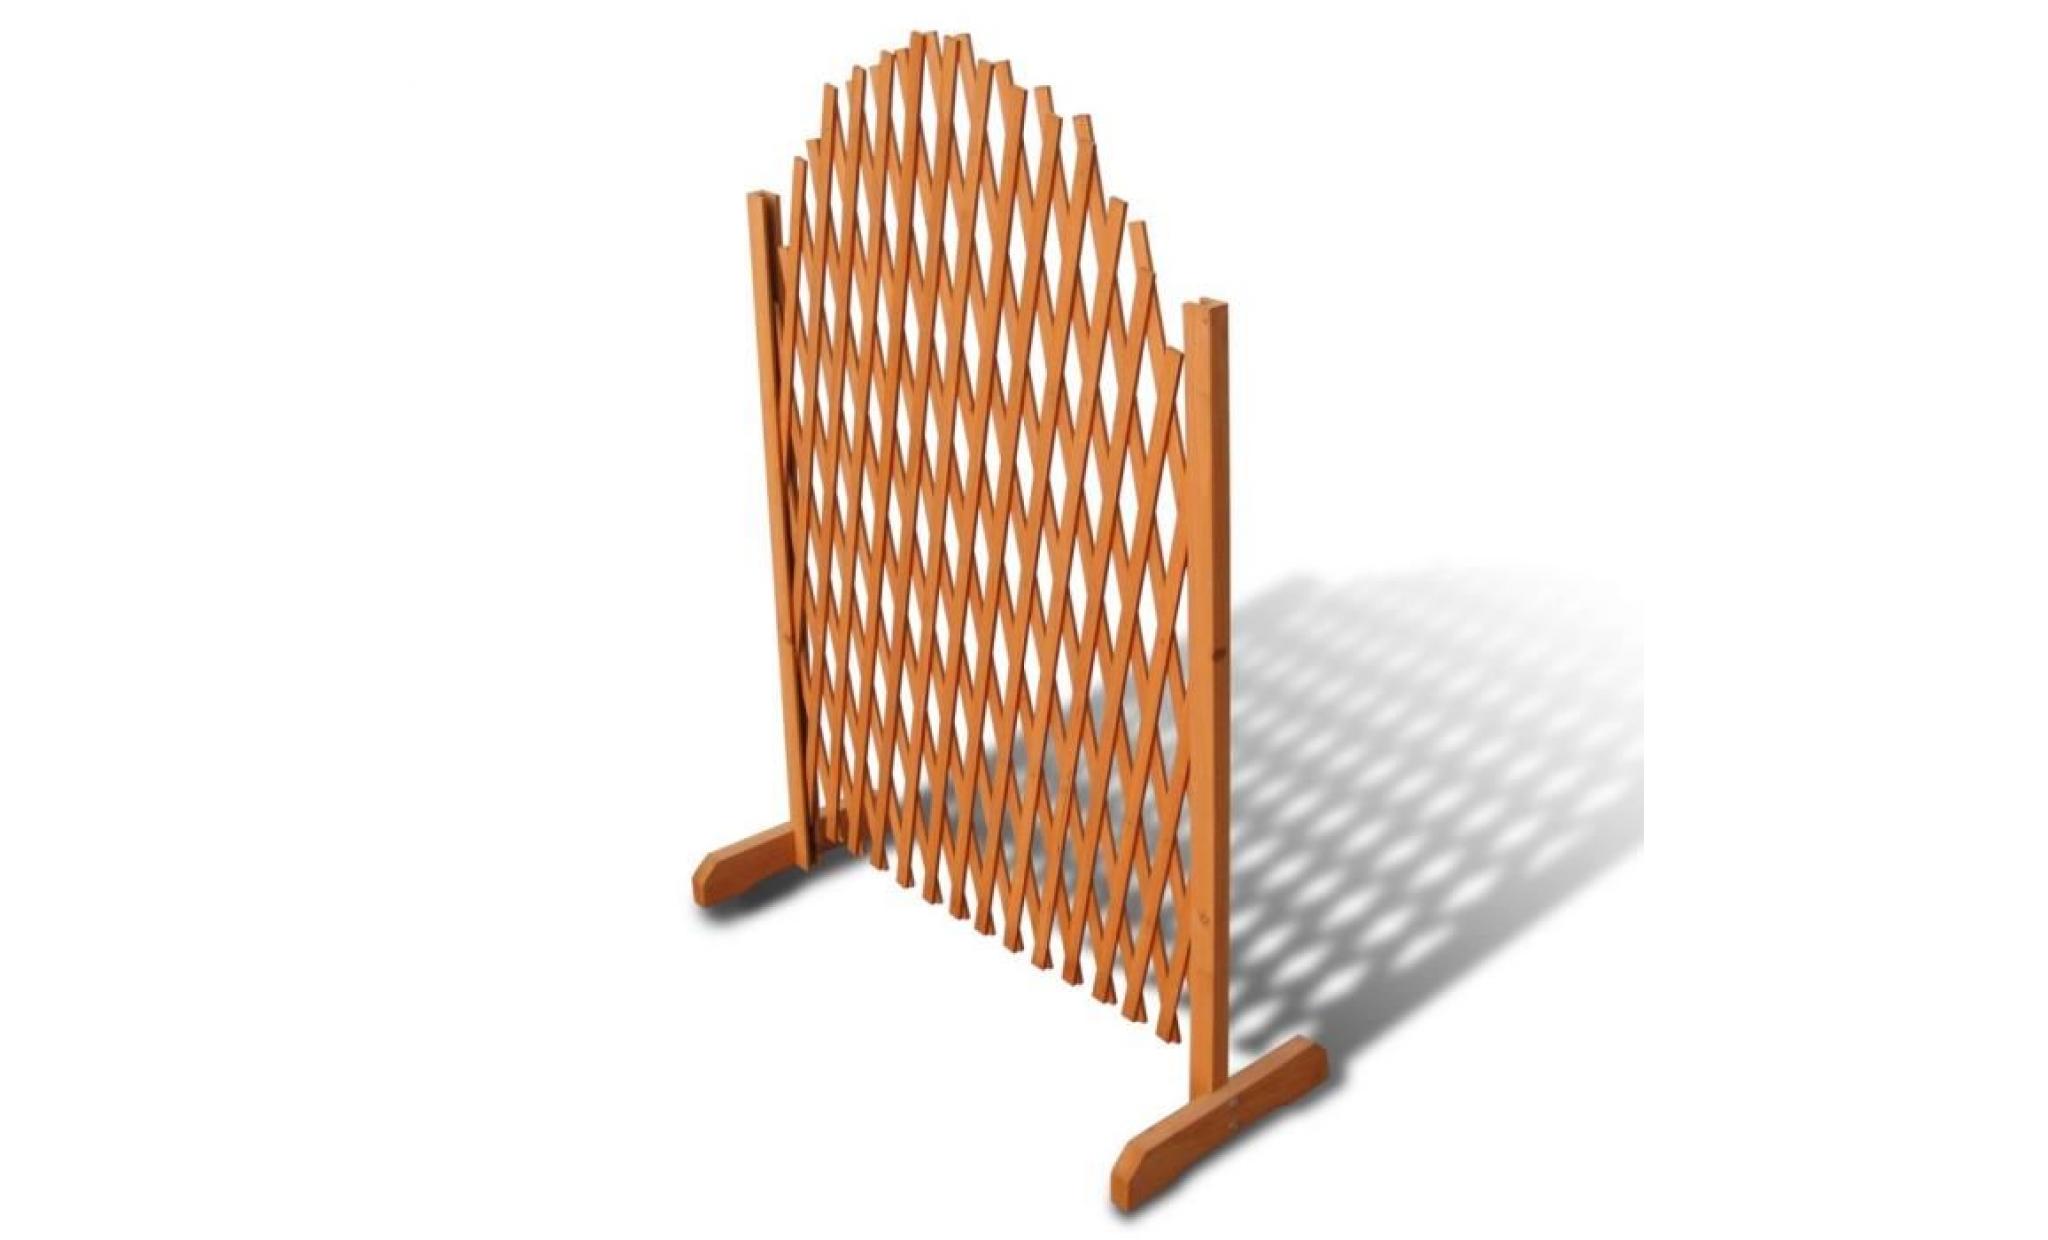 p72 barriere en bois extensible 180 x 100 cm